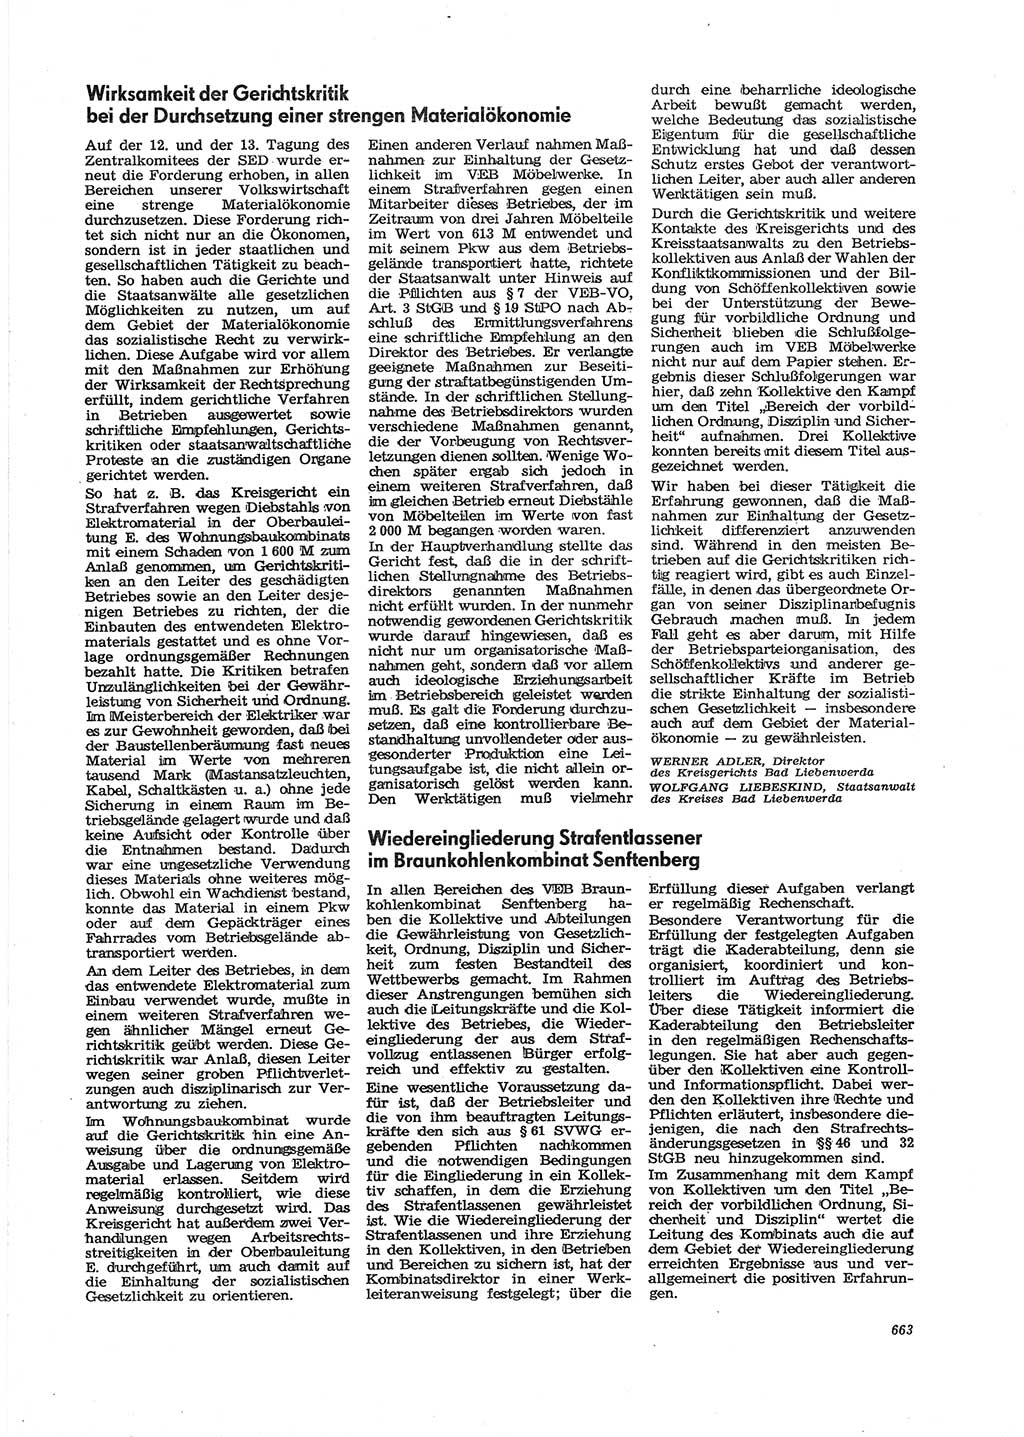 Neue Justiz (NJ), Zeitschrift für Recht und Rechtswissenschaft [Deutsche Demokratische Republik (DDR)], 29. Jahrgang 1975, Seite 663 (NJ DDR 1975, S. 663)